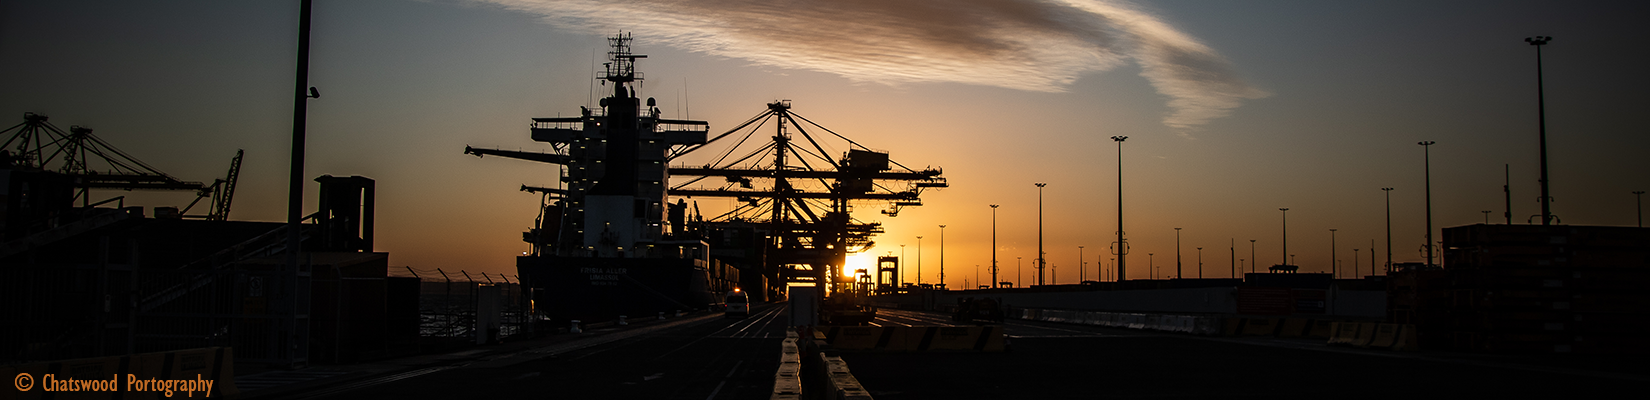 NSW Ports Vaccinating Visiting Seafarers at Port Botany